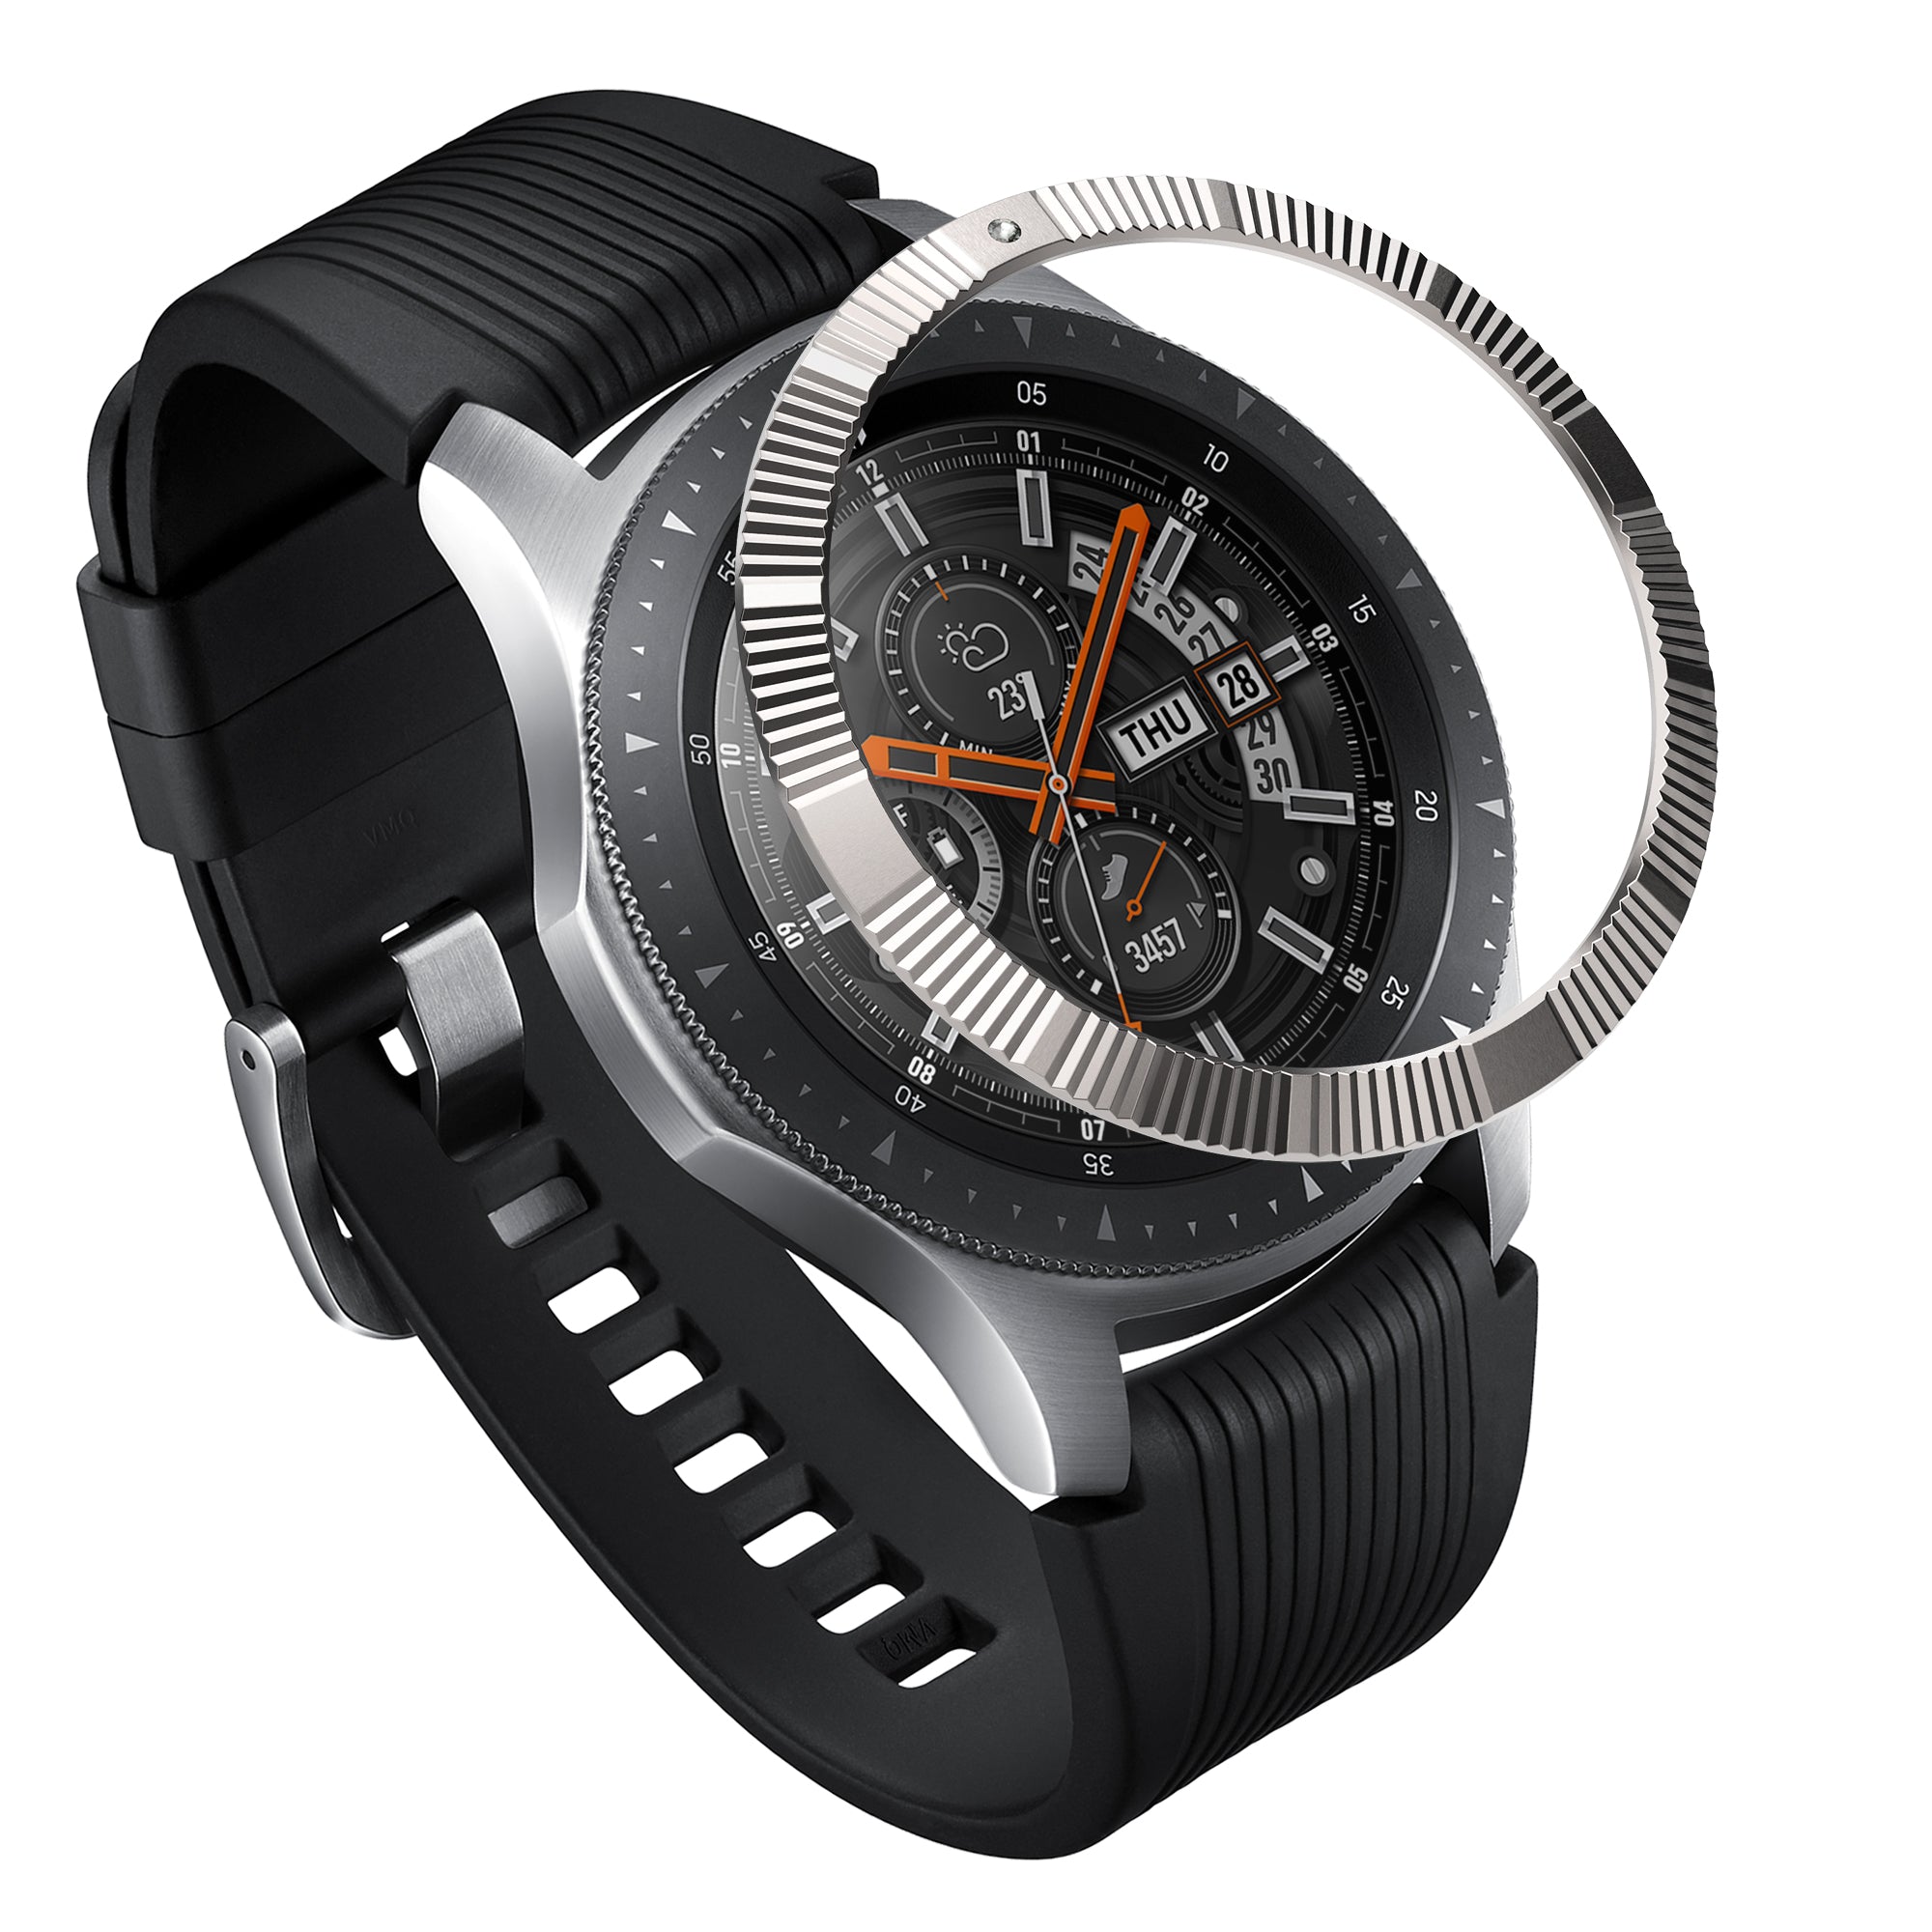 Galaxy Watch 46mm Ringke Bezel Styling 46-13 – Ringke Official Store